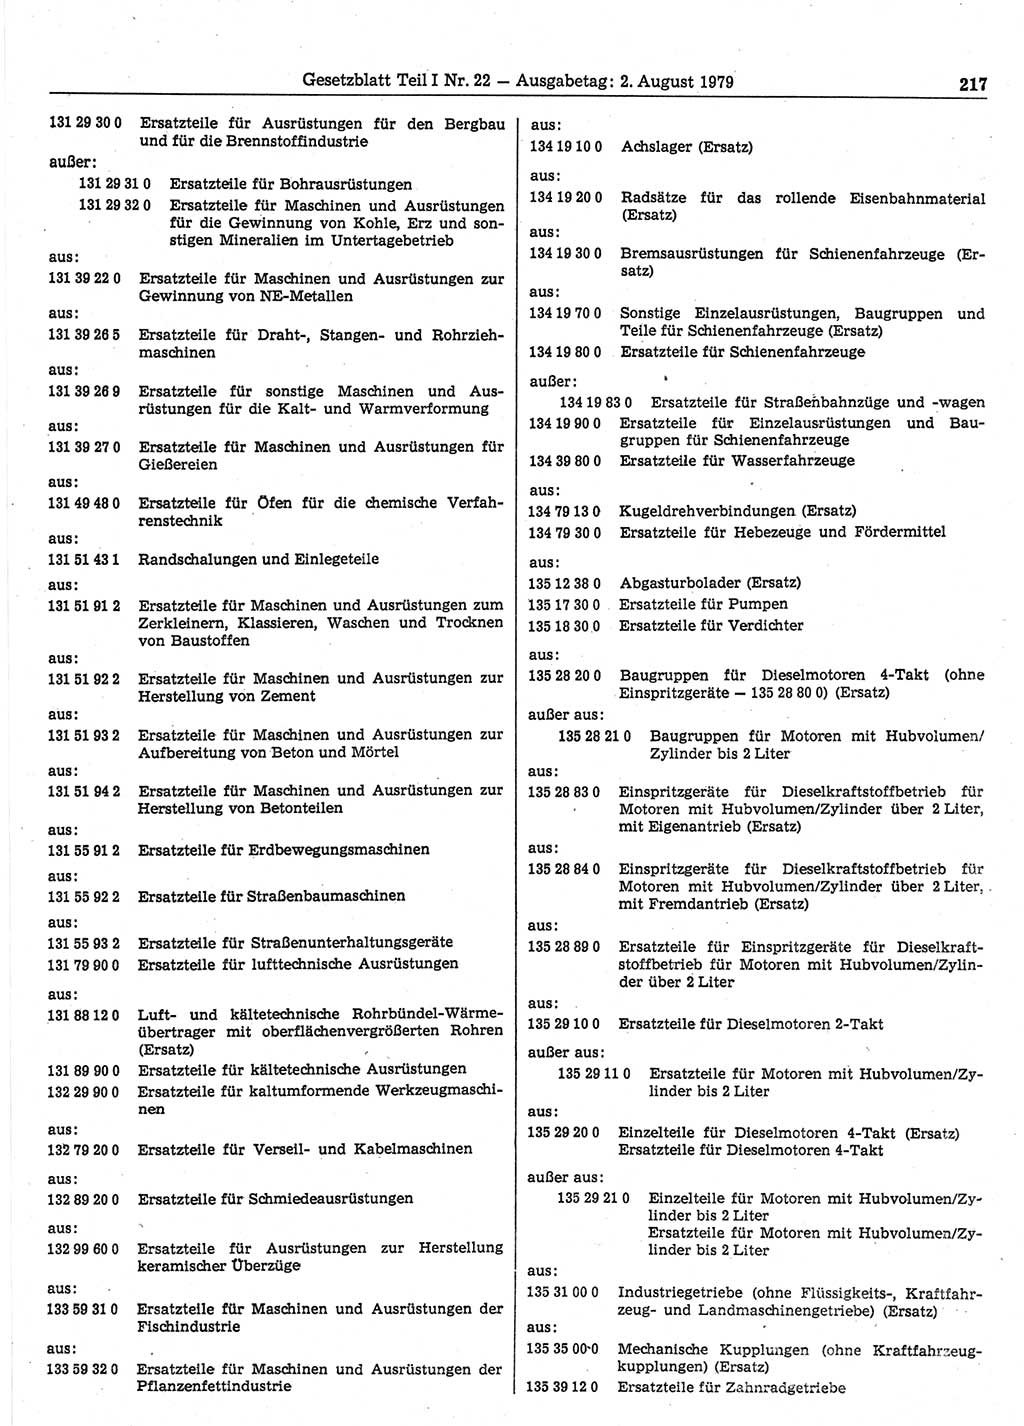 Gesetzblatt (GBl.) der Deutschen Demokratischen Republik (DDR) Teil Ⅰ 1979, Seite 217 (GBl. DDR Ⅰ 1979, S. 217)